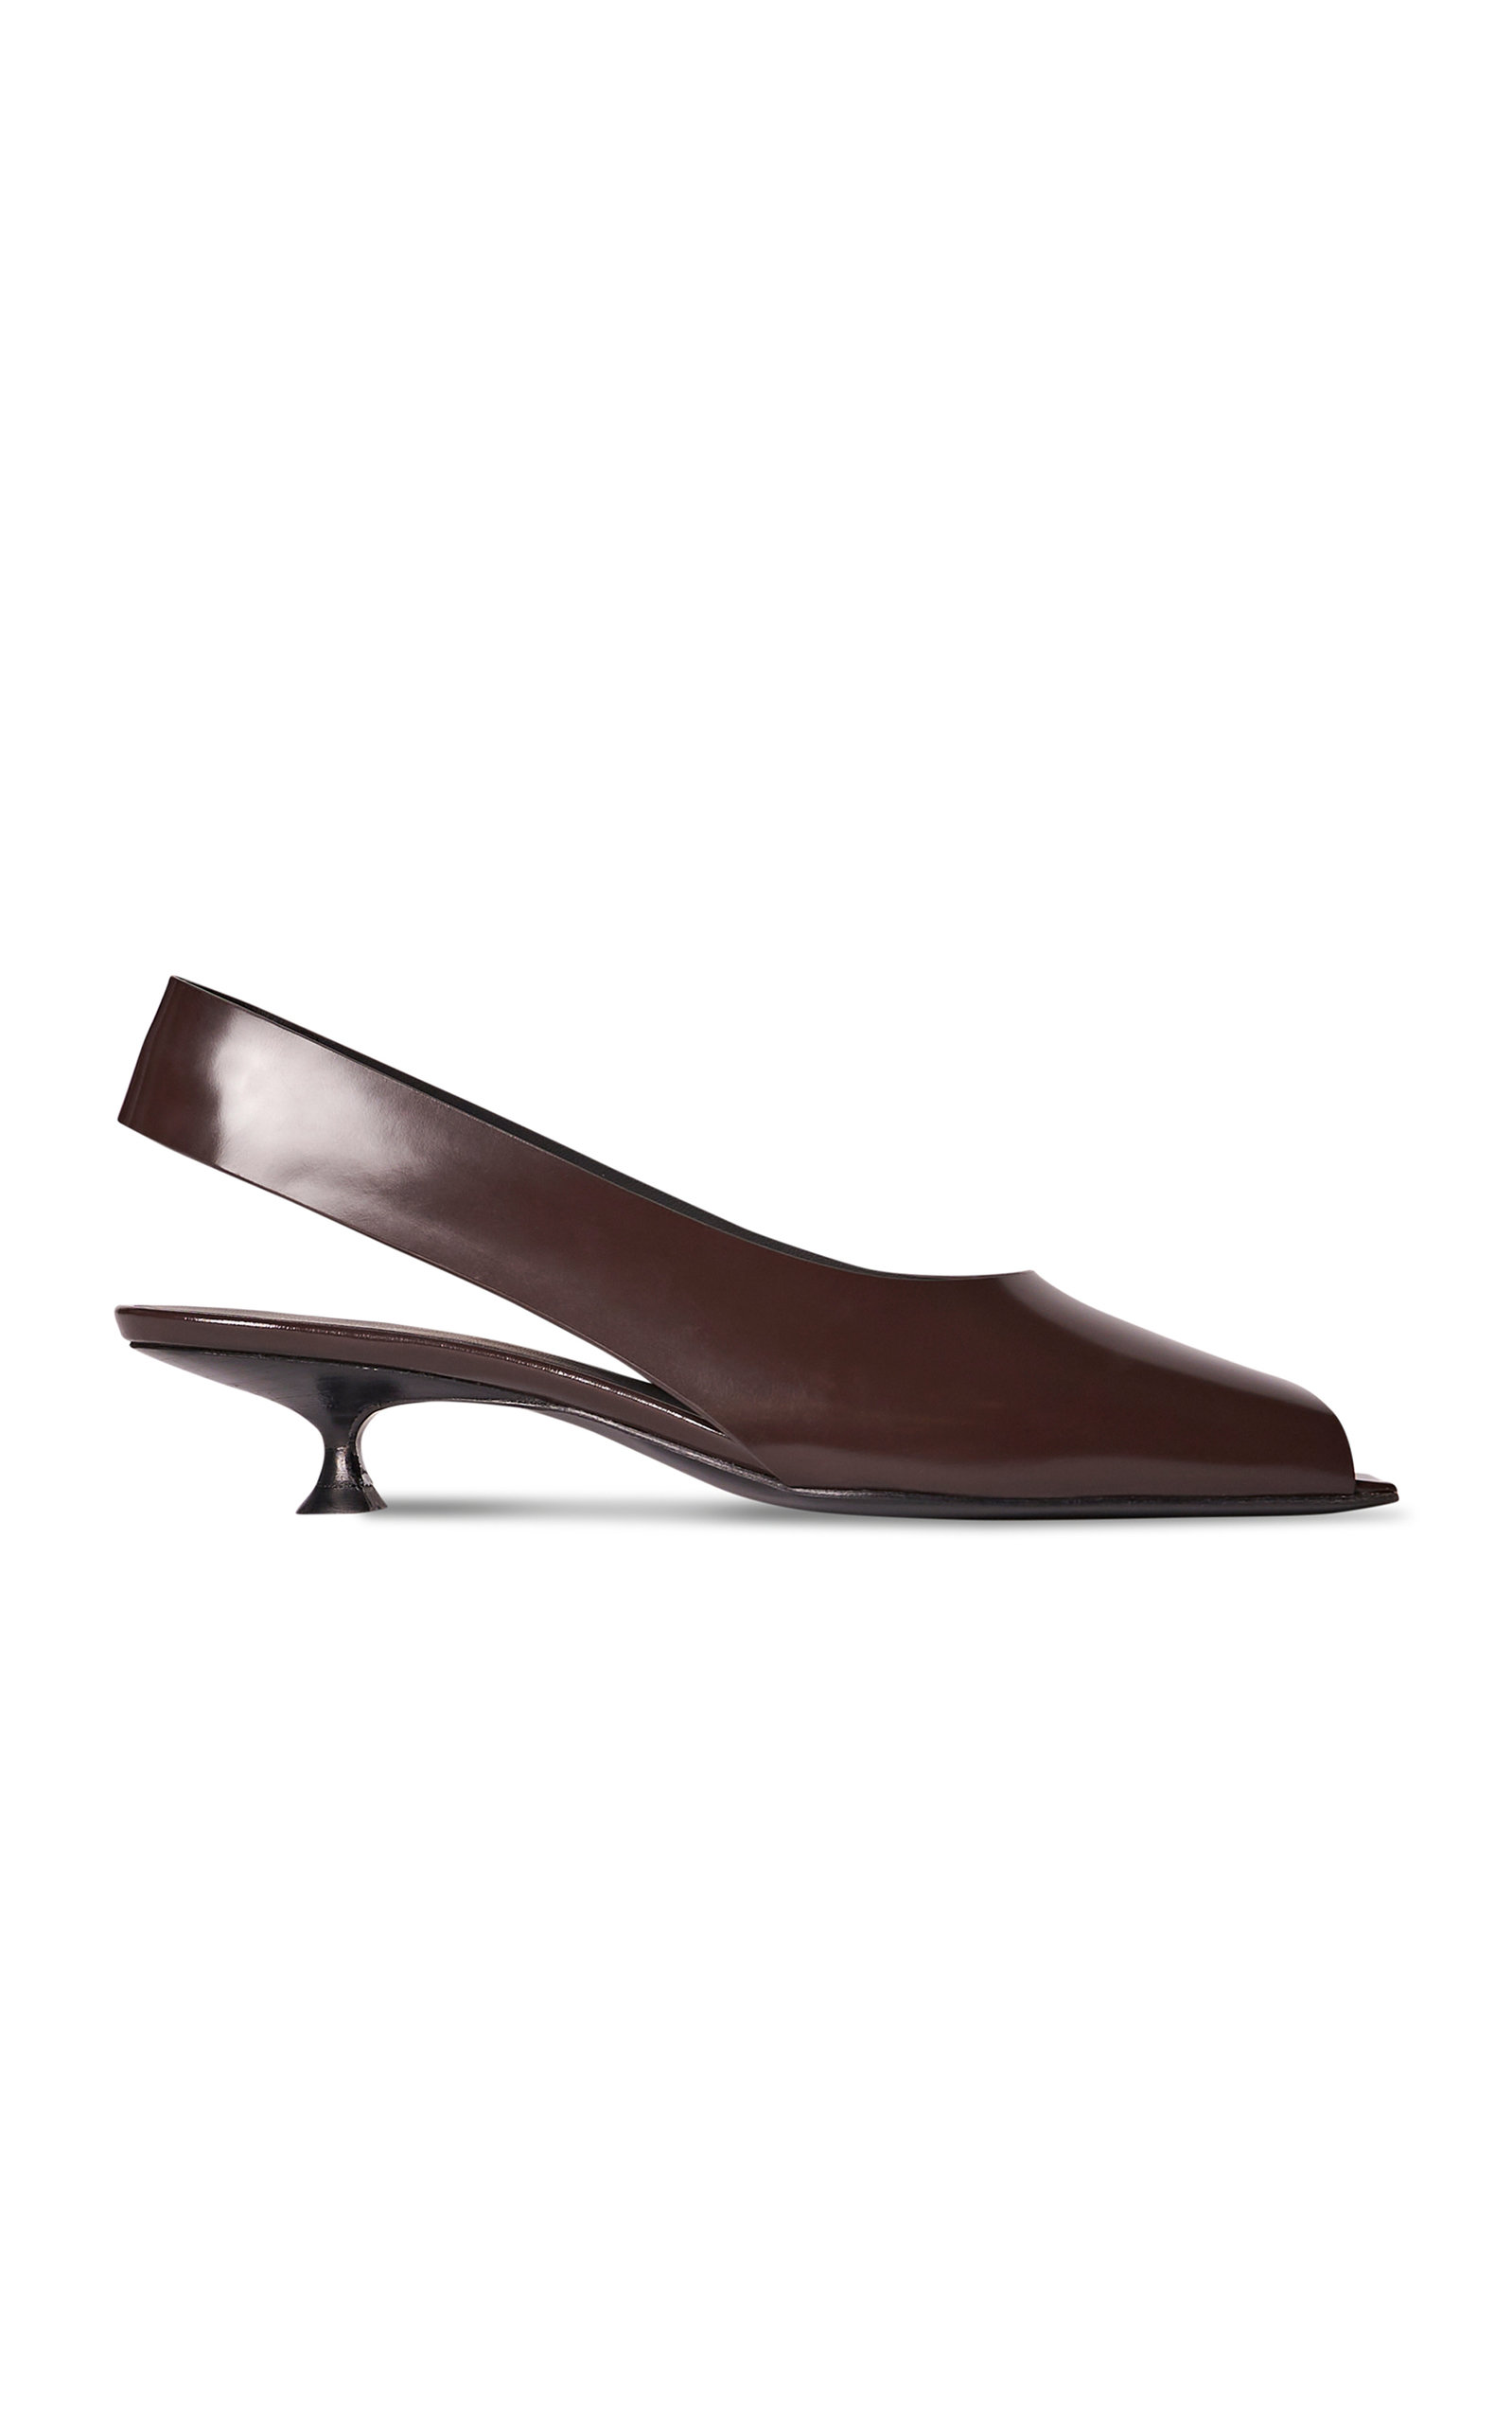 The Row Women's Sharp Flat Sandals